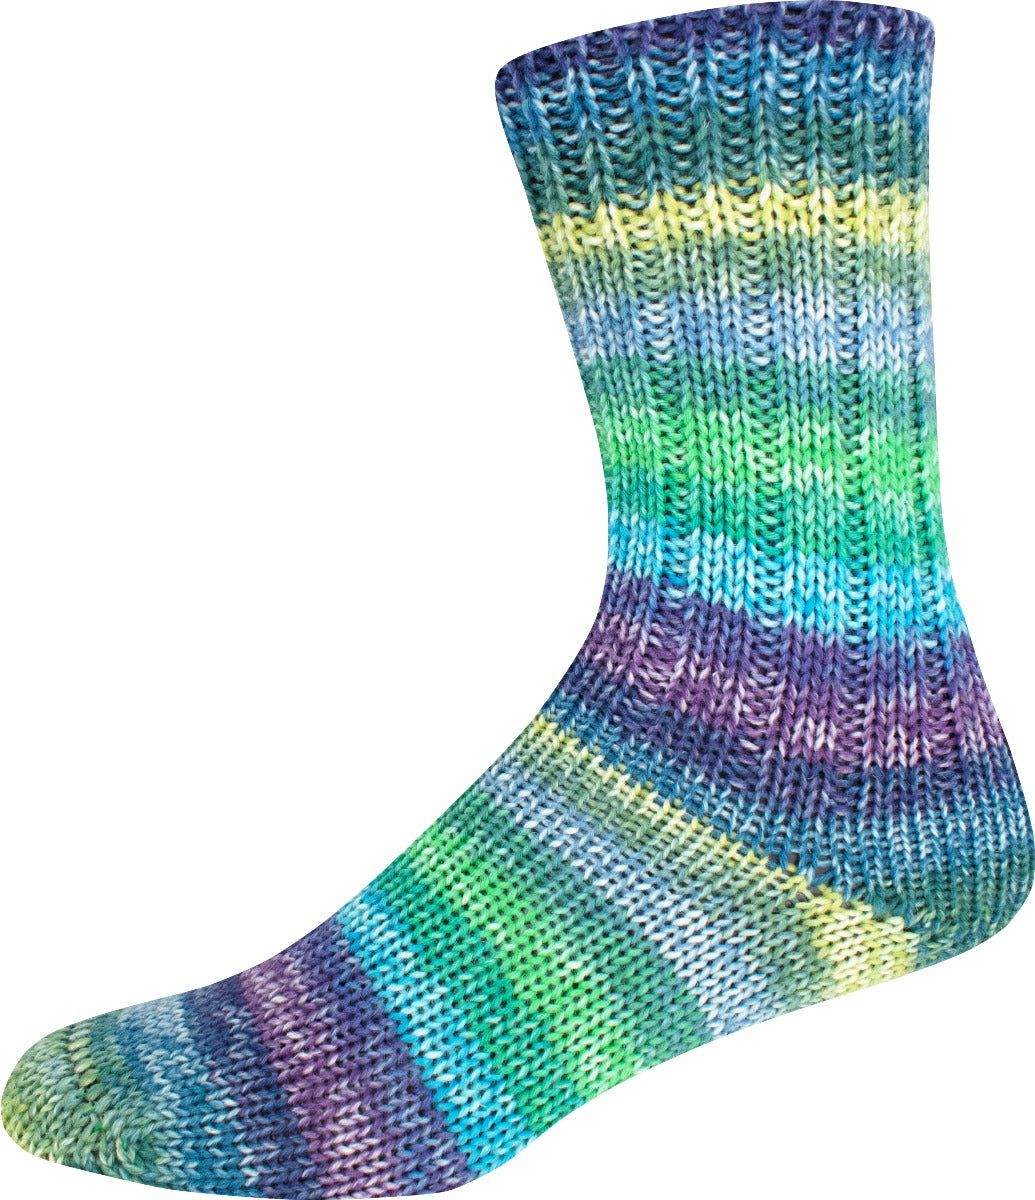 Sockenwolle 6-fach Merino Color Sort. 349 von Online